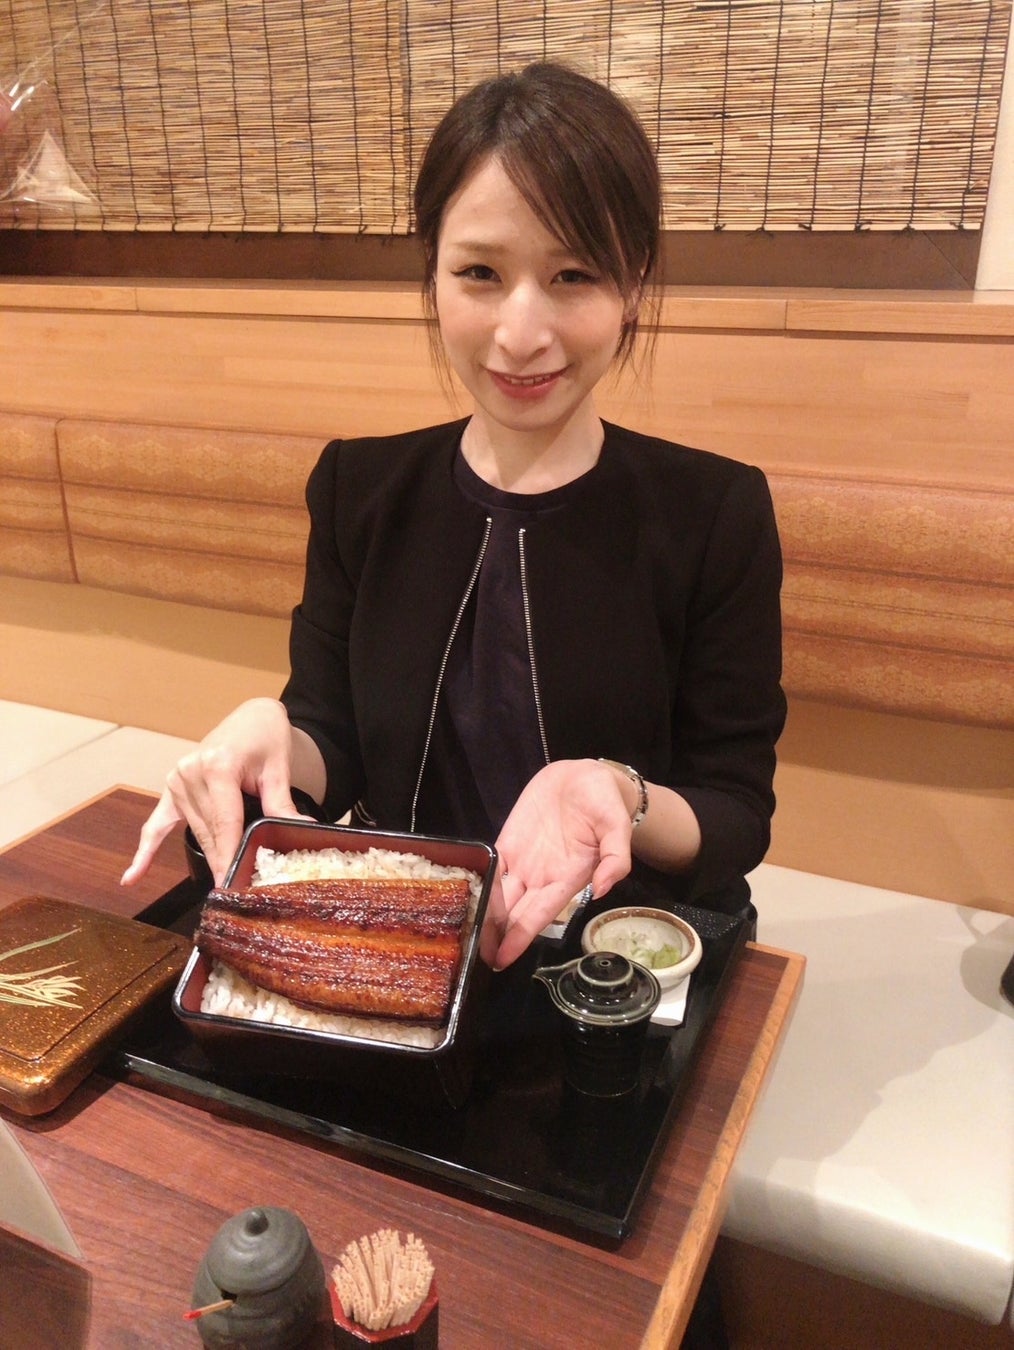 ”日本最大級”のパンの祭典『パンのフェス2024春 in 横浜赤レンガ』開催日程を発表！来年２4年は3月1日（金）～3日（日）の3日間